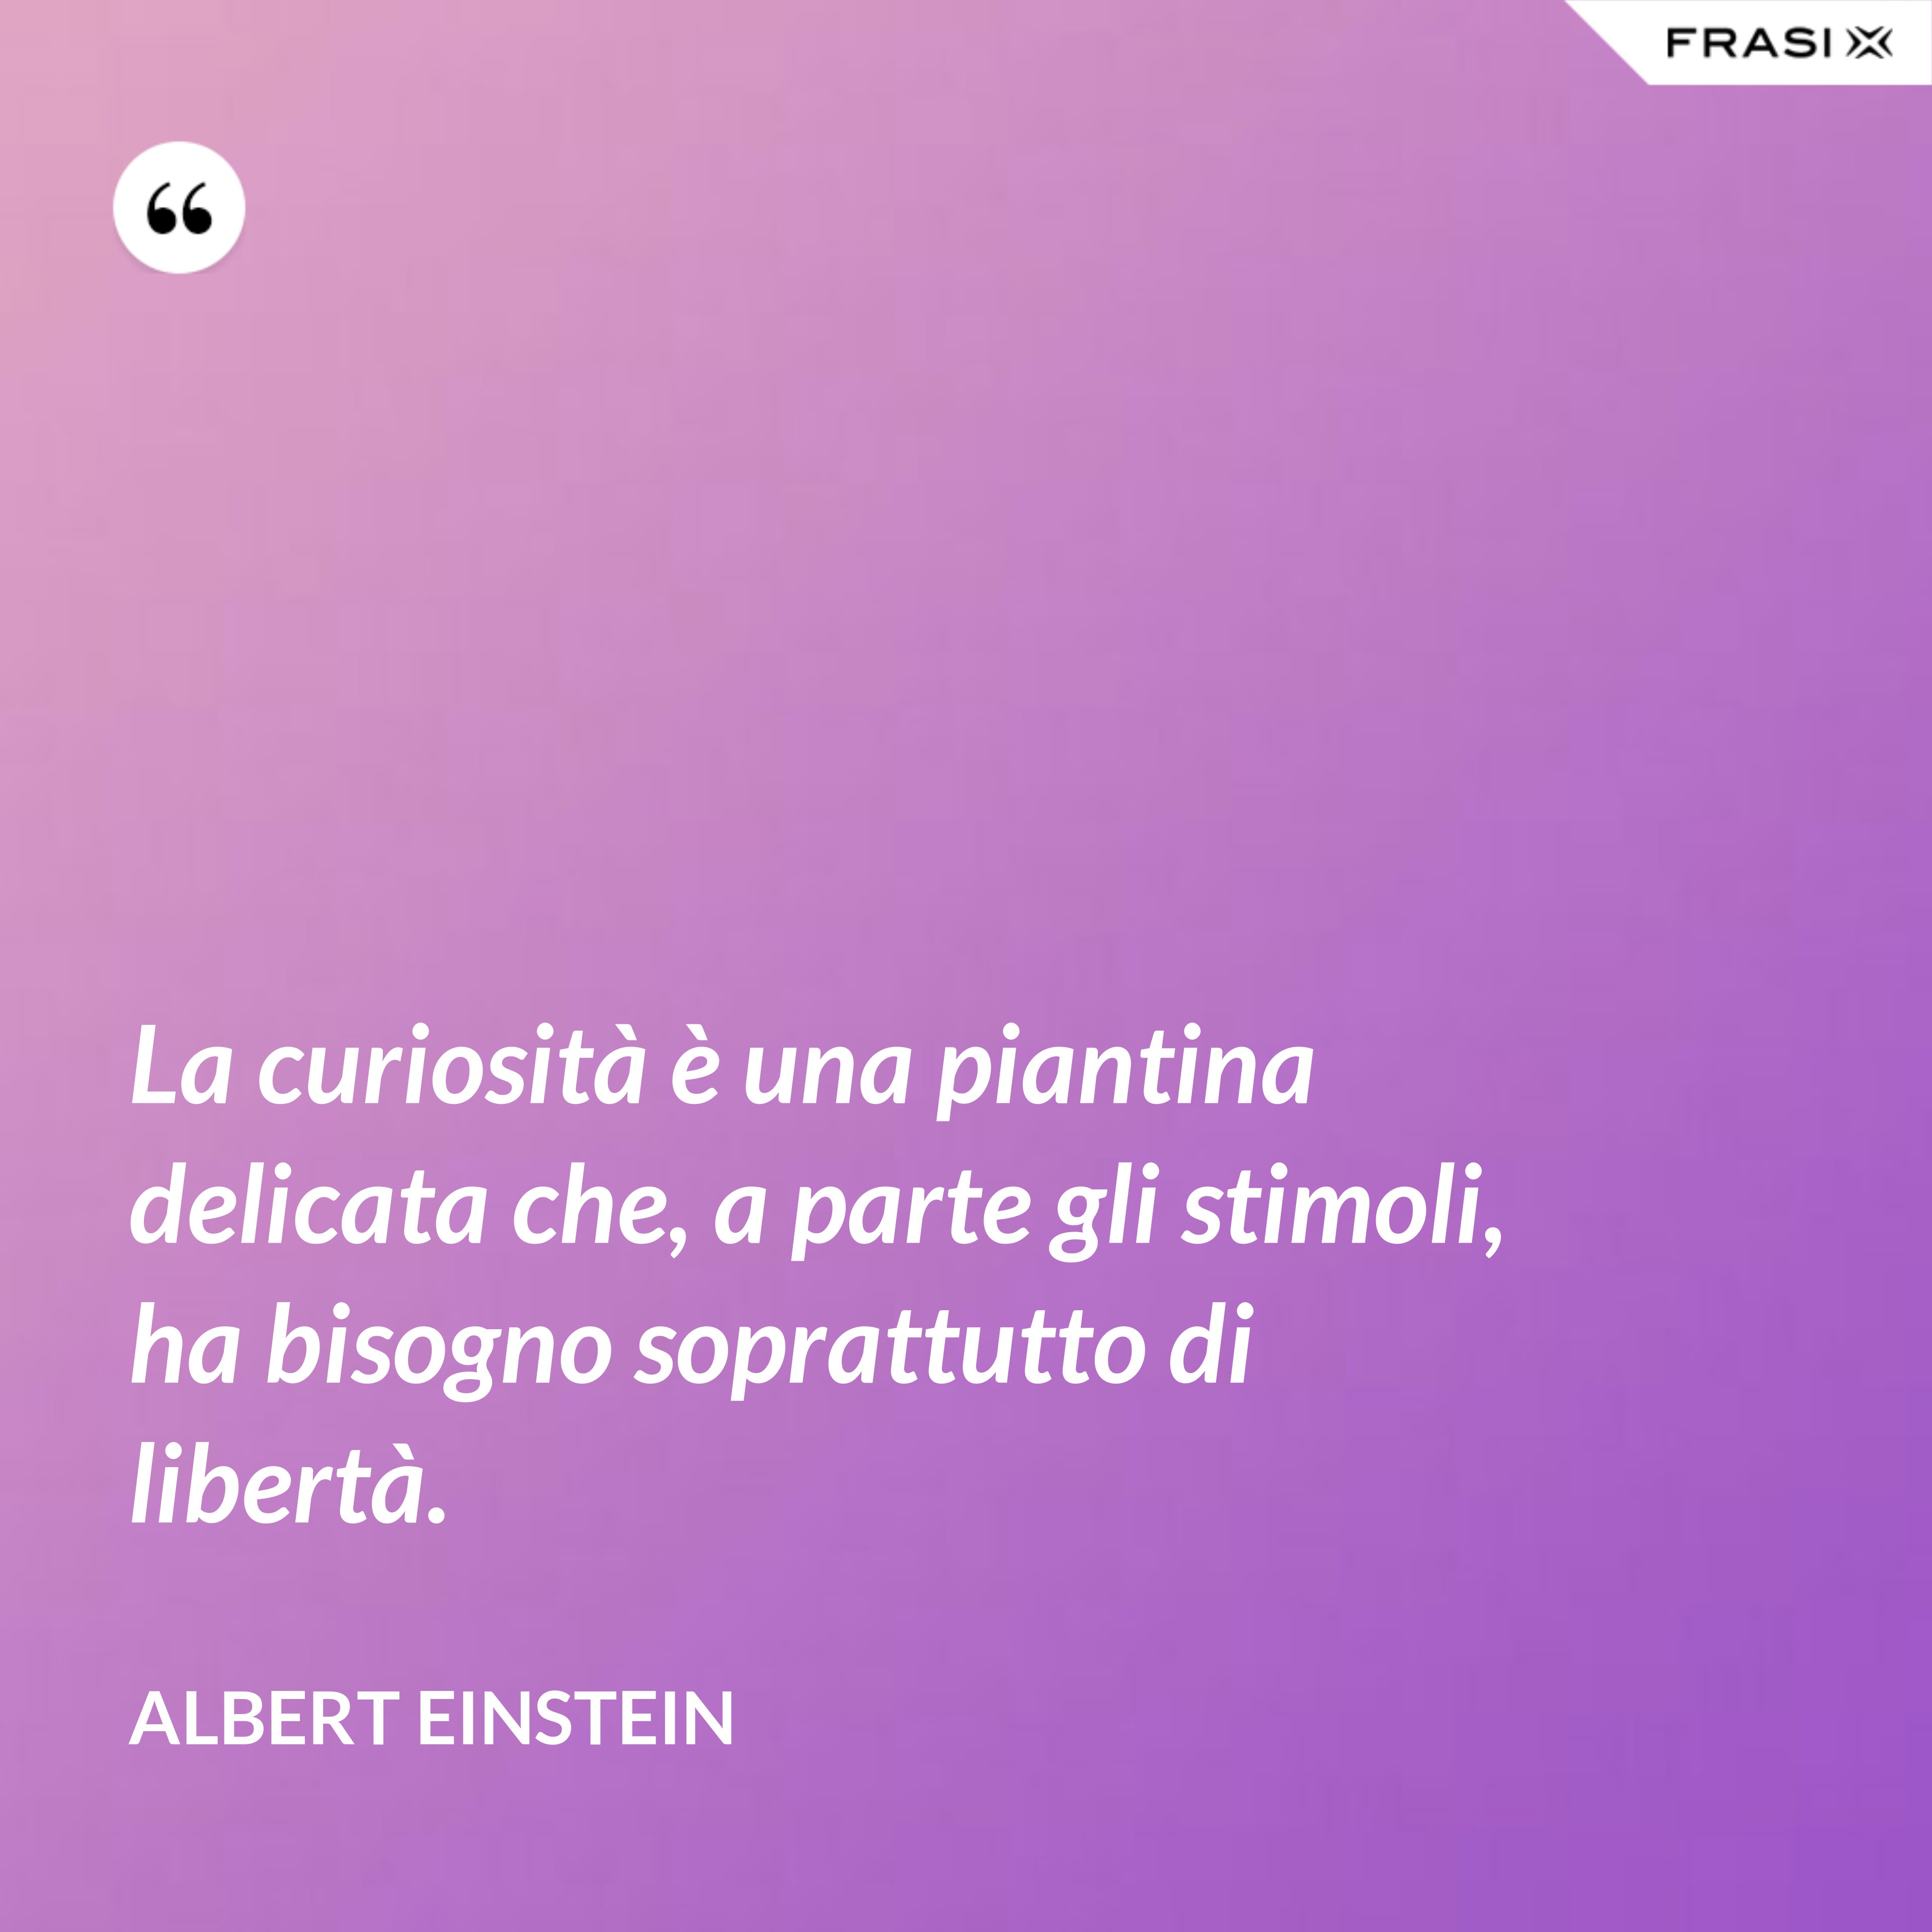 La curiosità è una piantina delicata che, a parte gli stimoli, ha bisogno soprattutto di libertà. - Albert Einstein